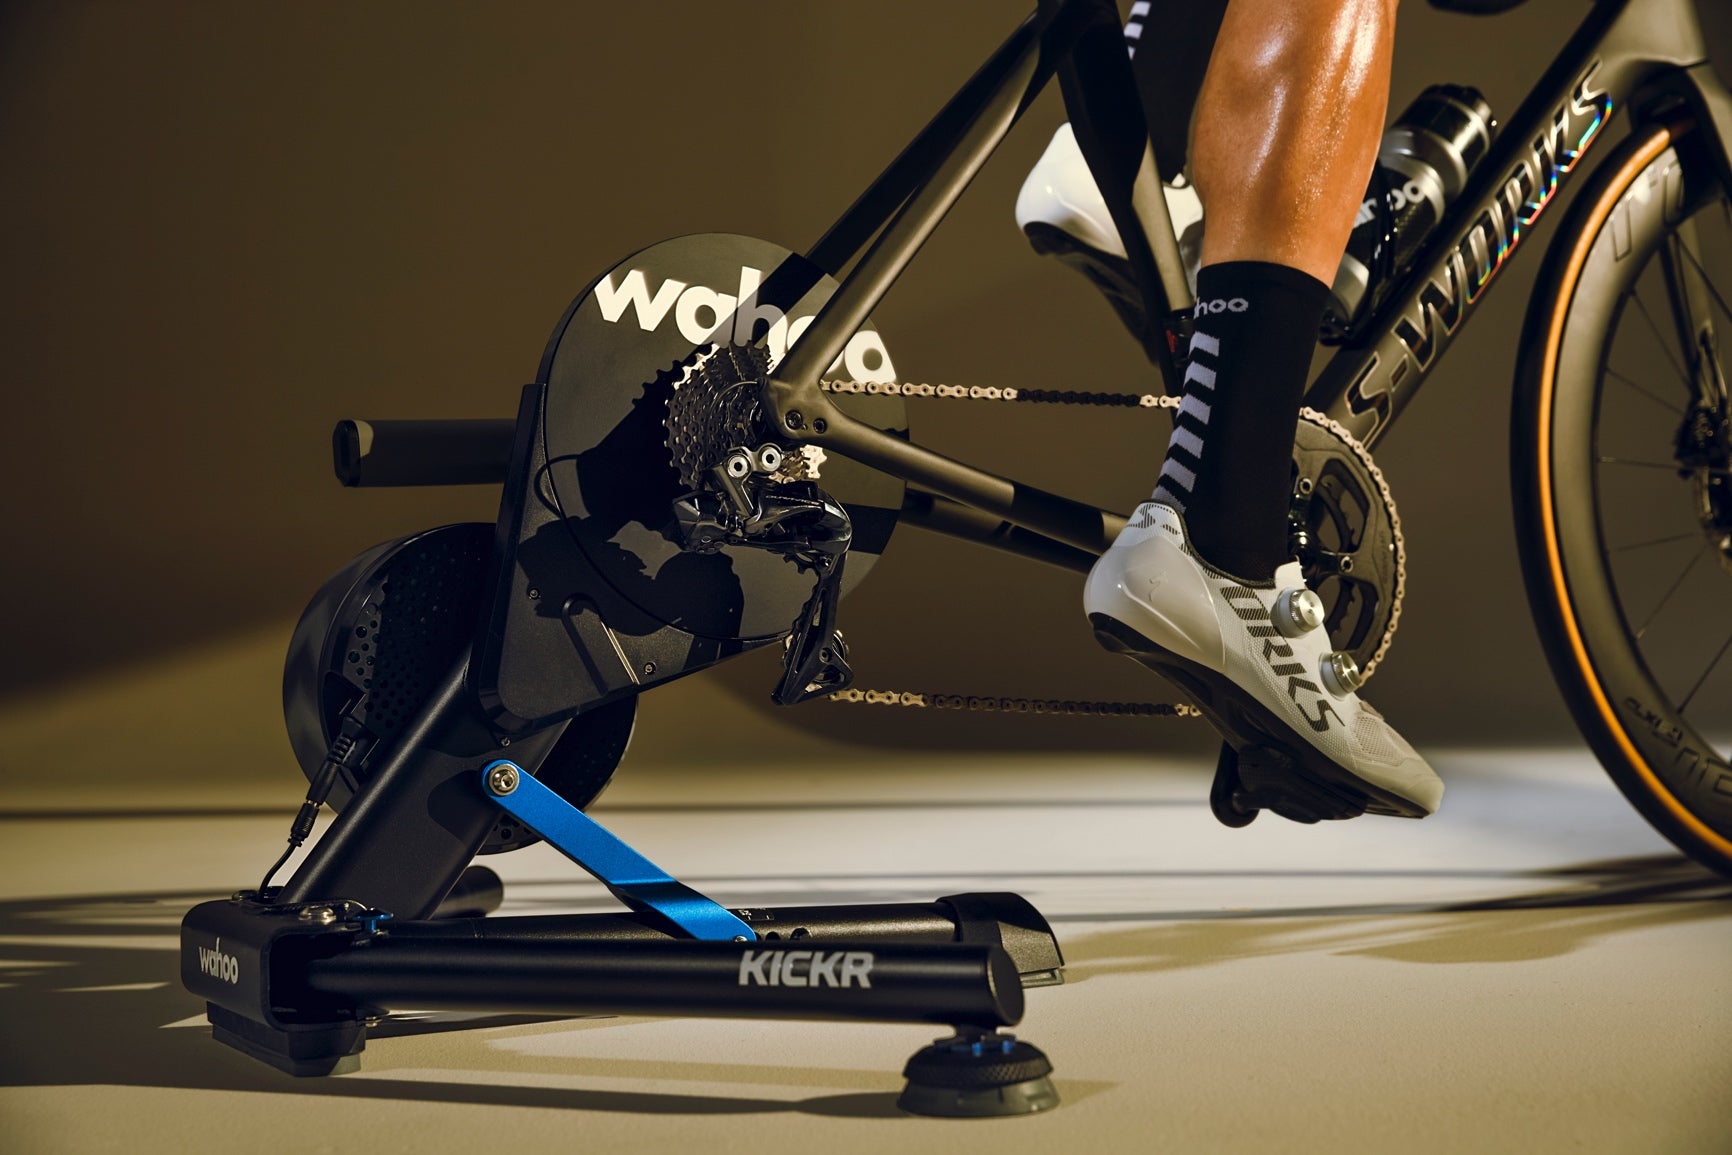 Wahoo發佈迄今為止最準確的KICKR  第五代智能騎行台提升了準確度、易用性和騎行感